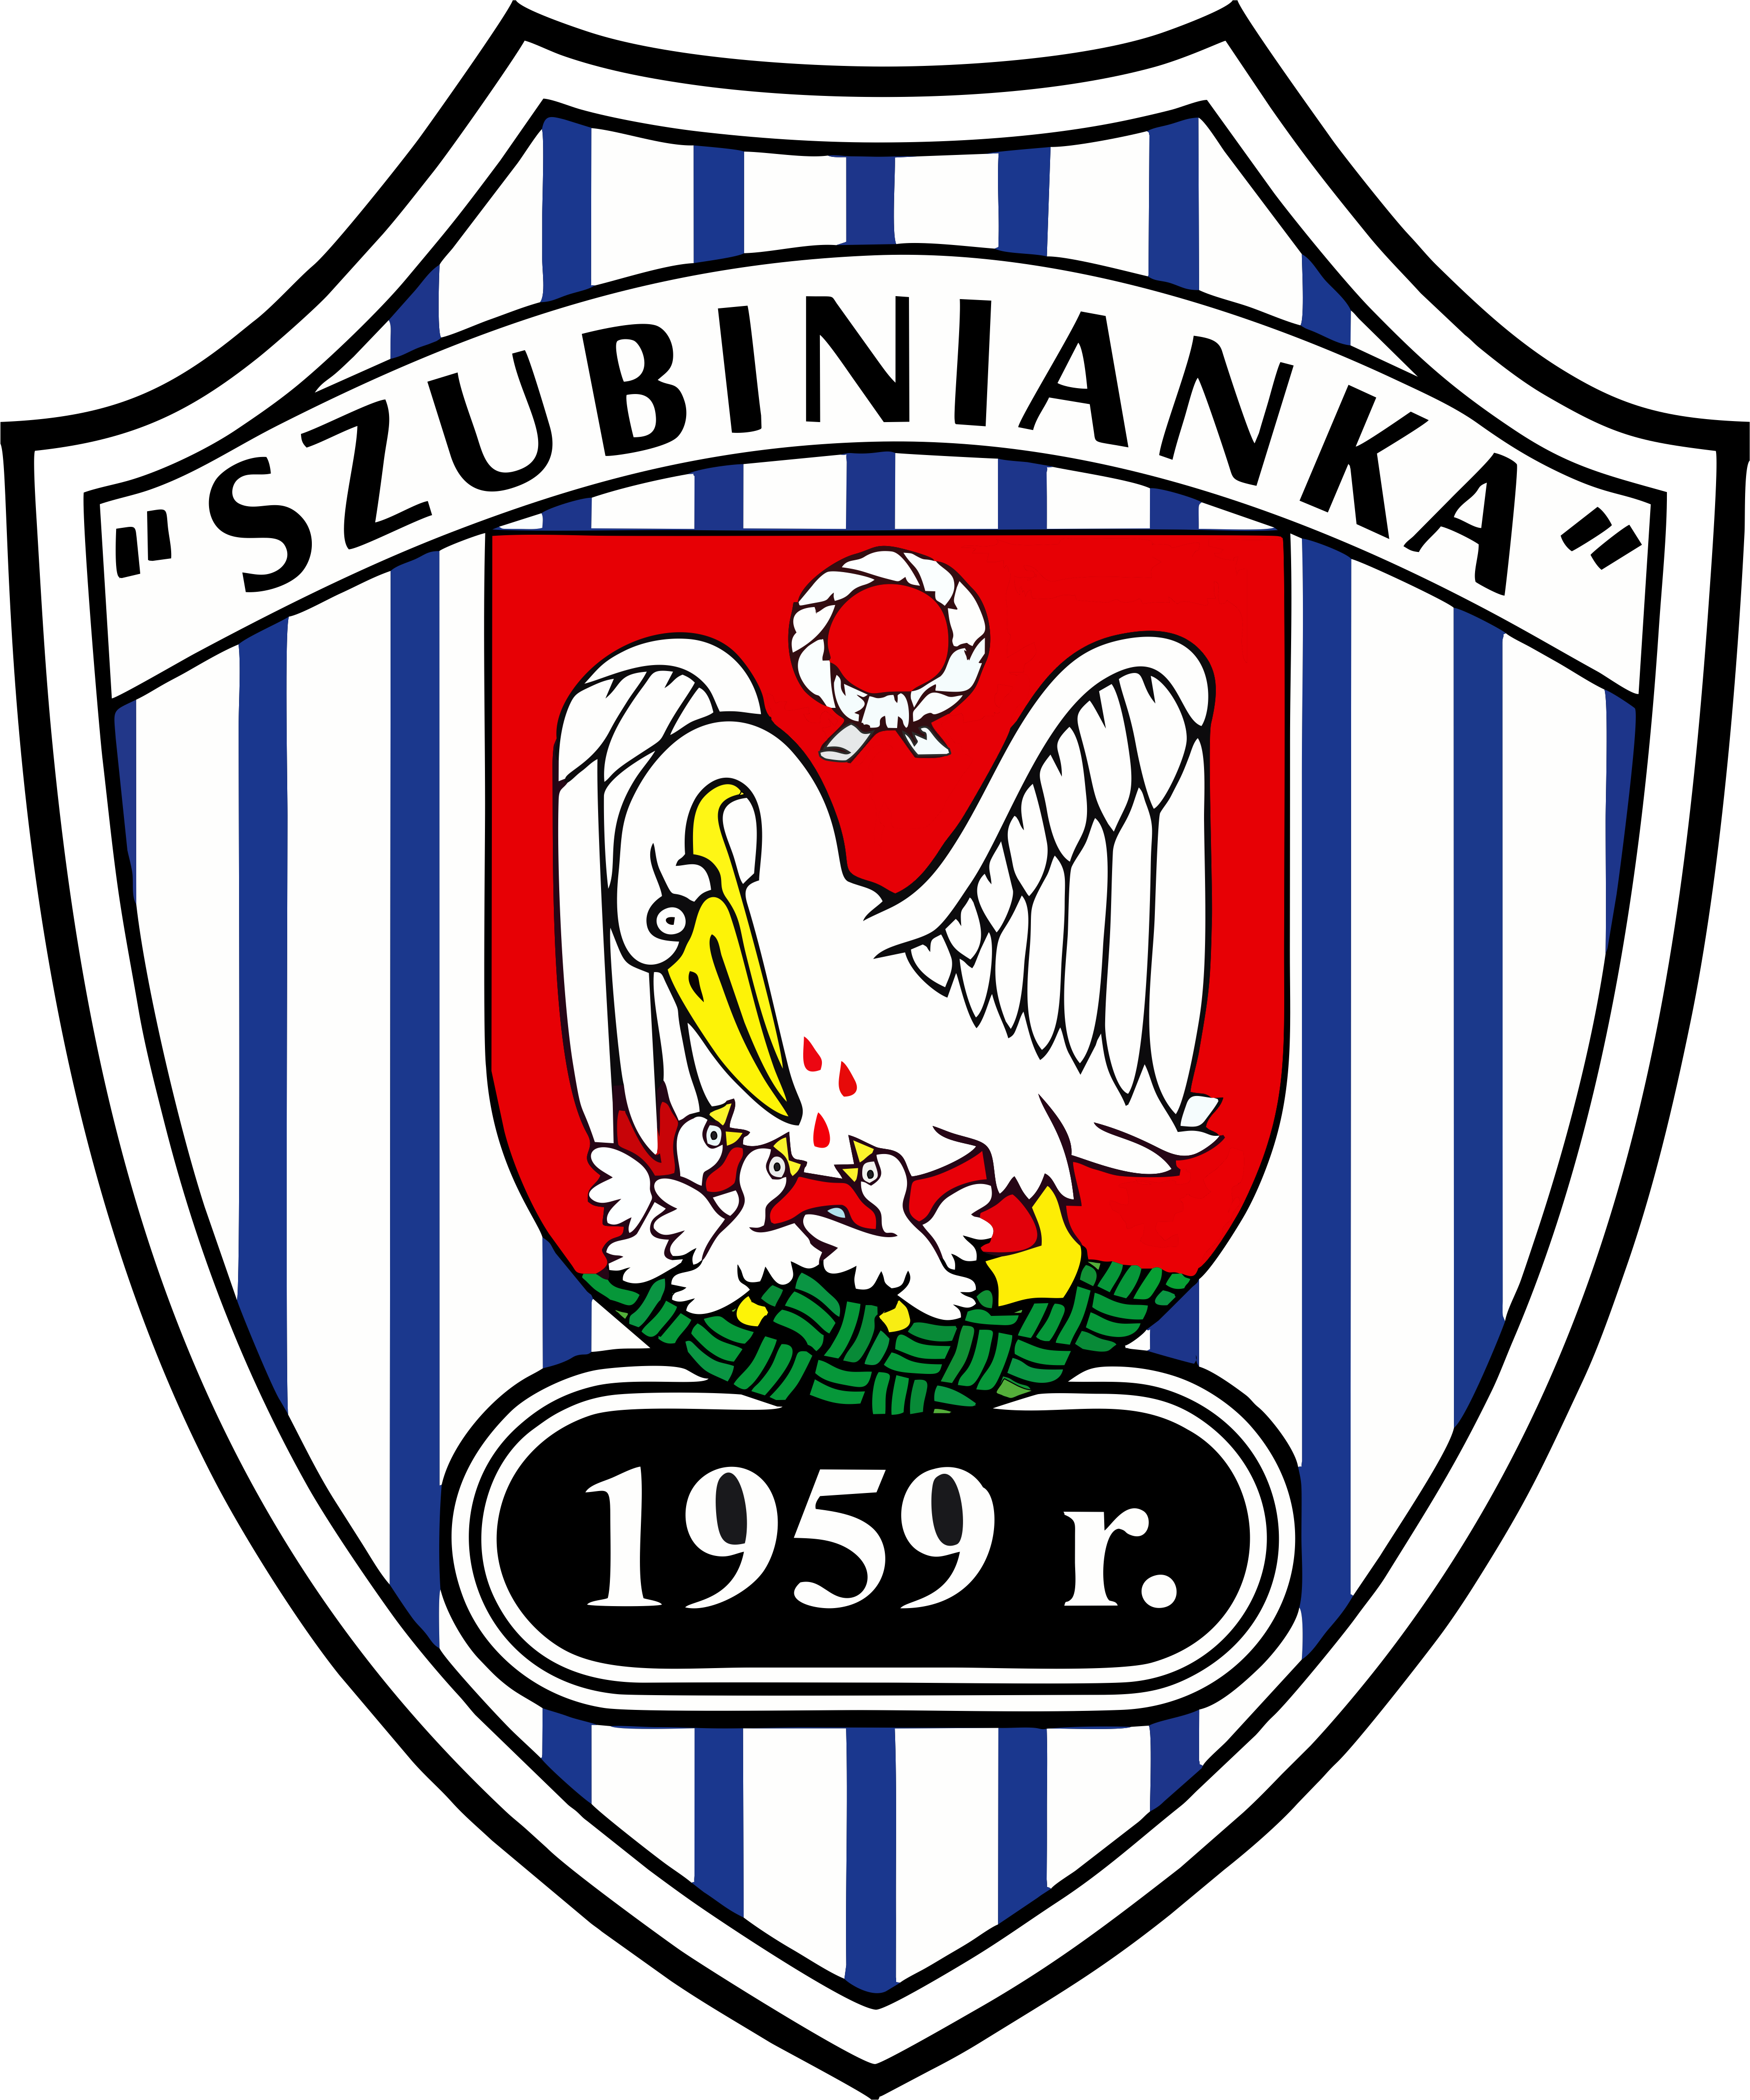 Ludowy Klub Sportowy "Szubinianka"